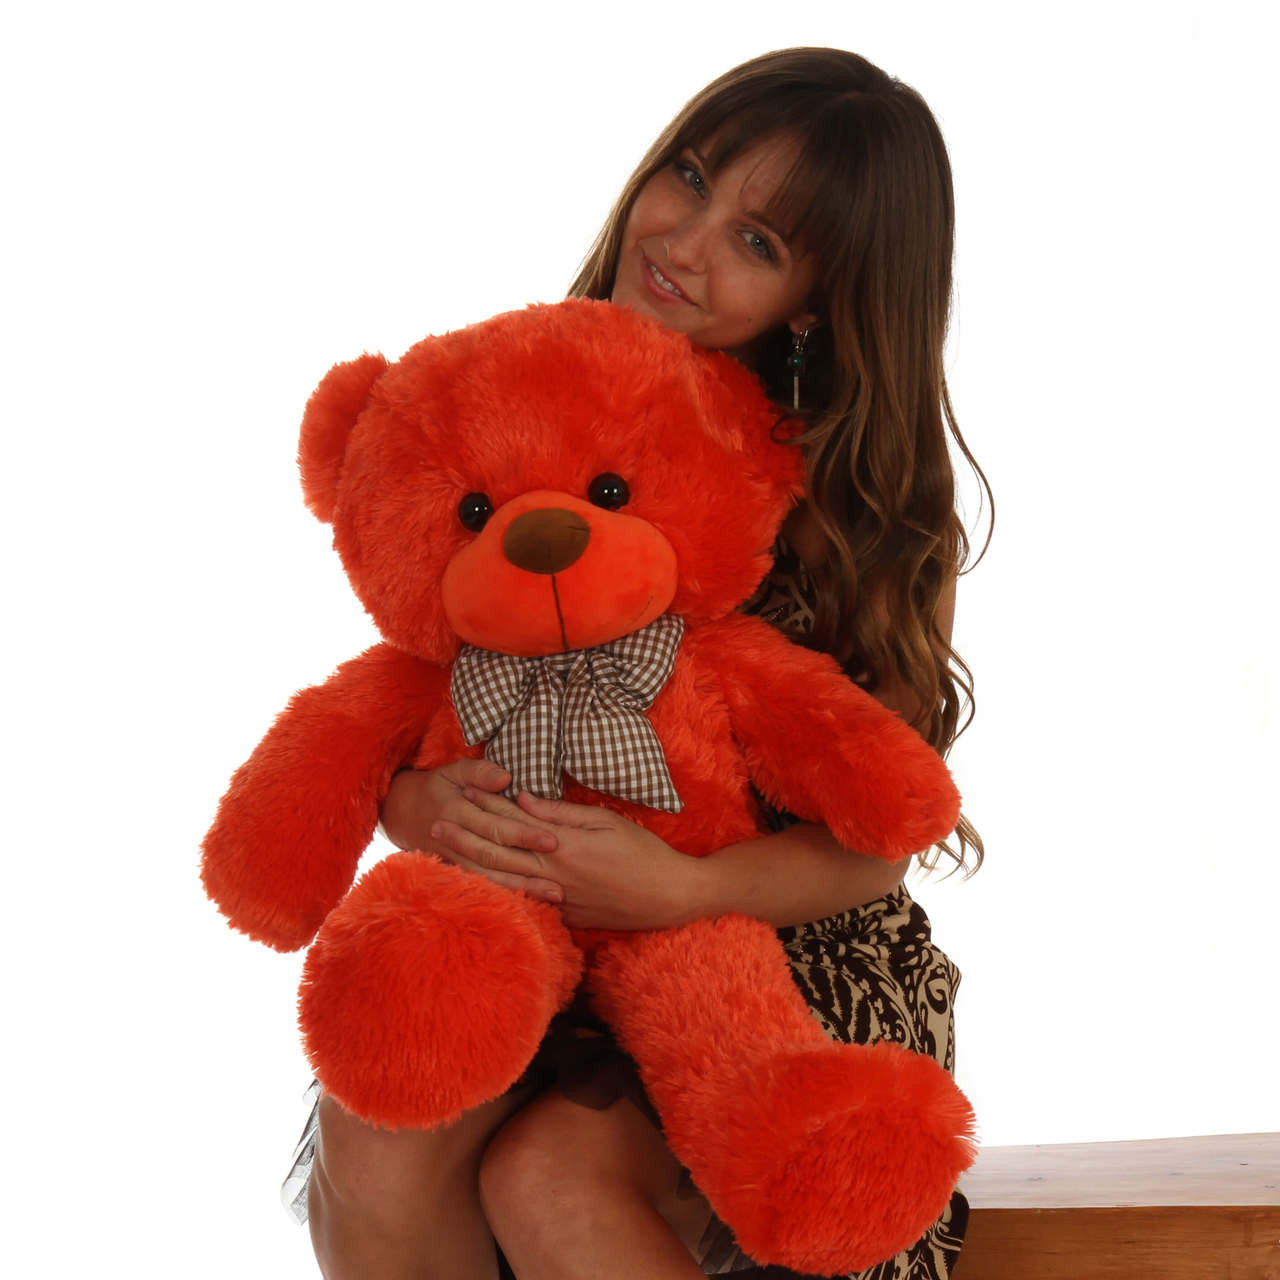 Oversized Teddy Bear 30in Lovey Cuddles Beautiful Orange Red Fur